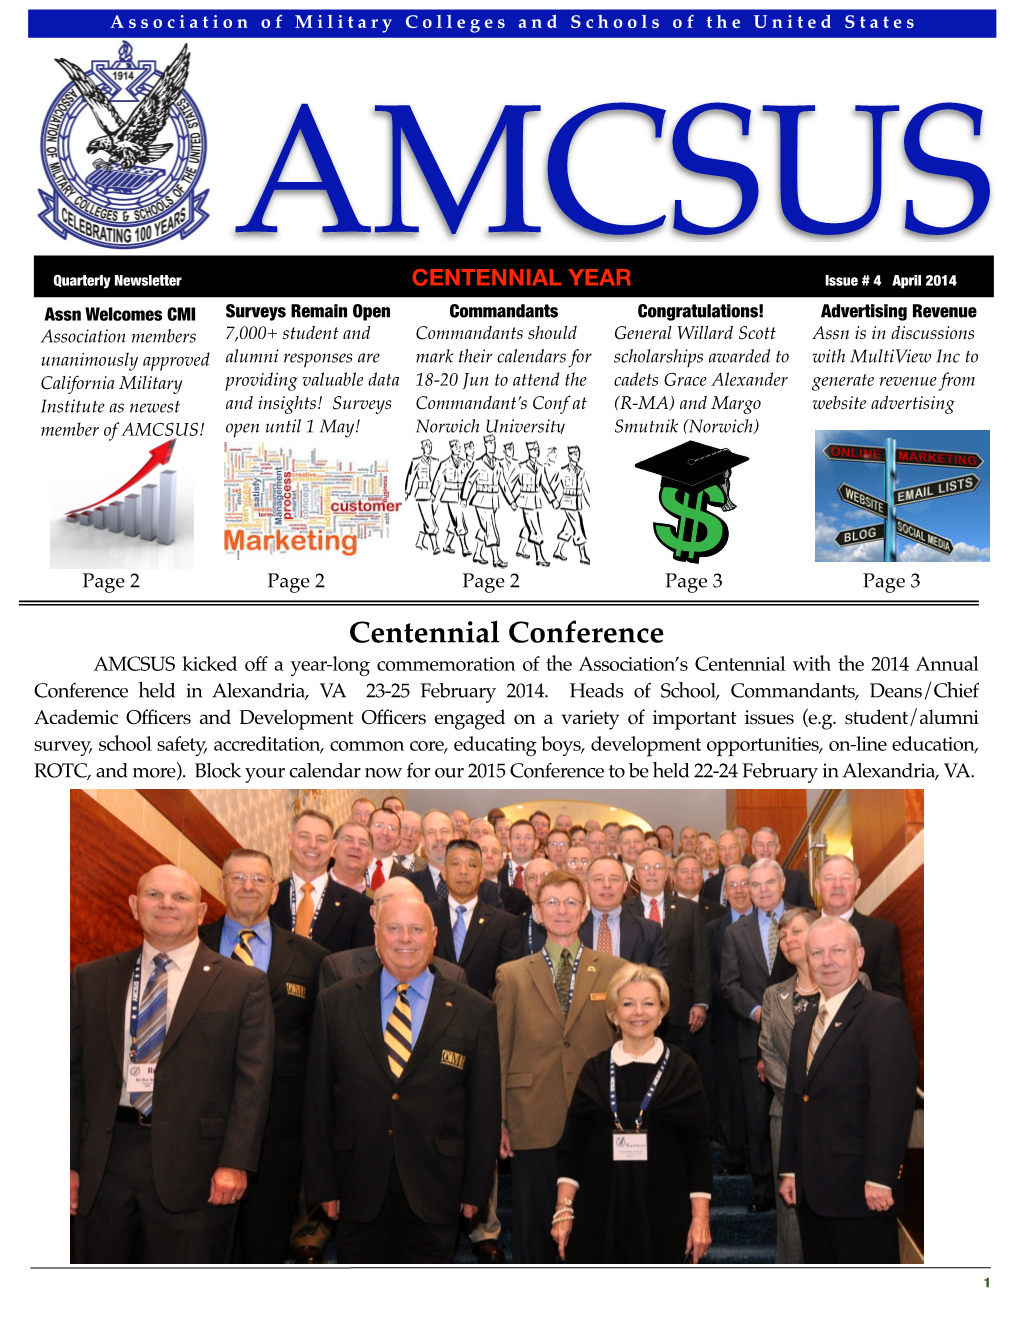 AMCSUS Issue 4